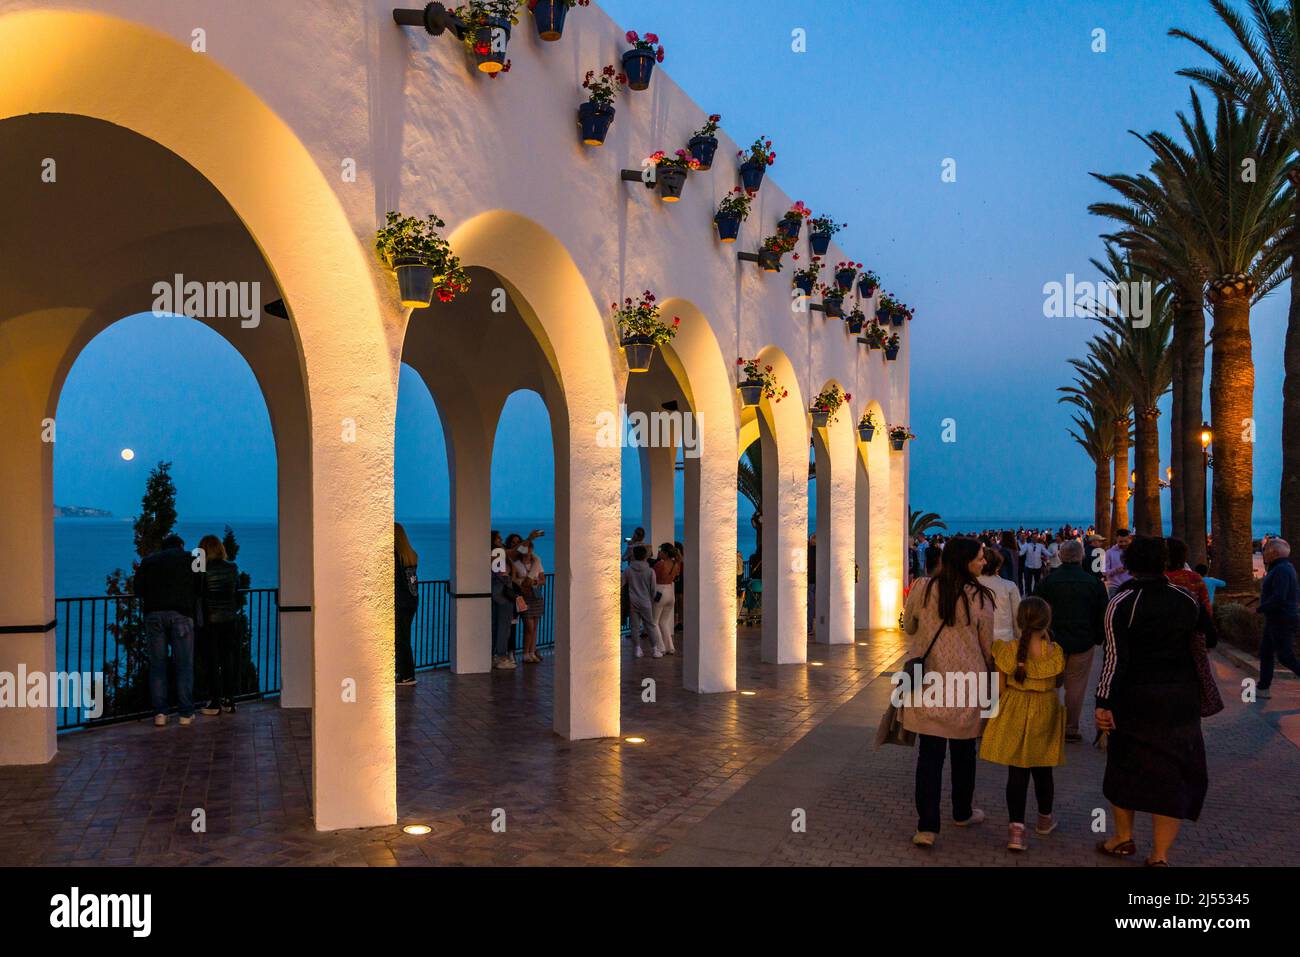 Tourist zurück in Spanien für die Karwoche von Ostern nach mehr als 2 Jahren der Einschränkungen. Promenade Bereich des Balcony of Europe in Nerja voller Menschen Stockfoto